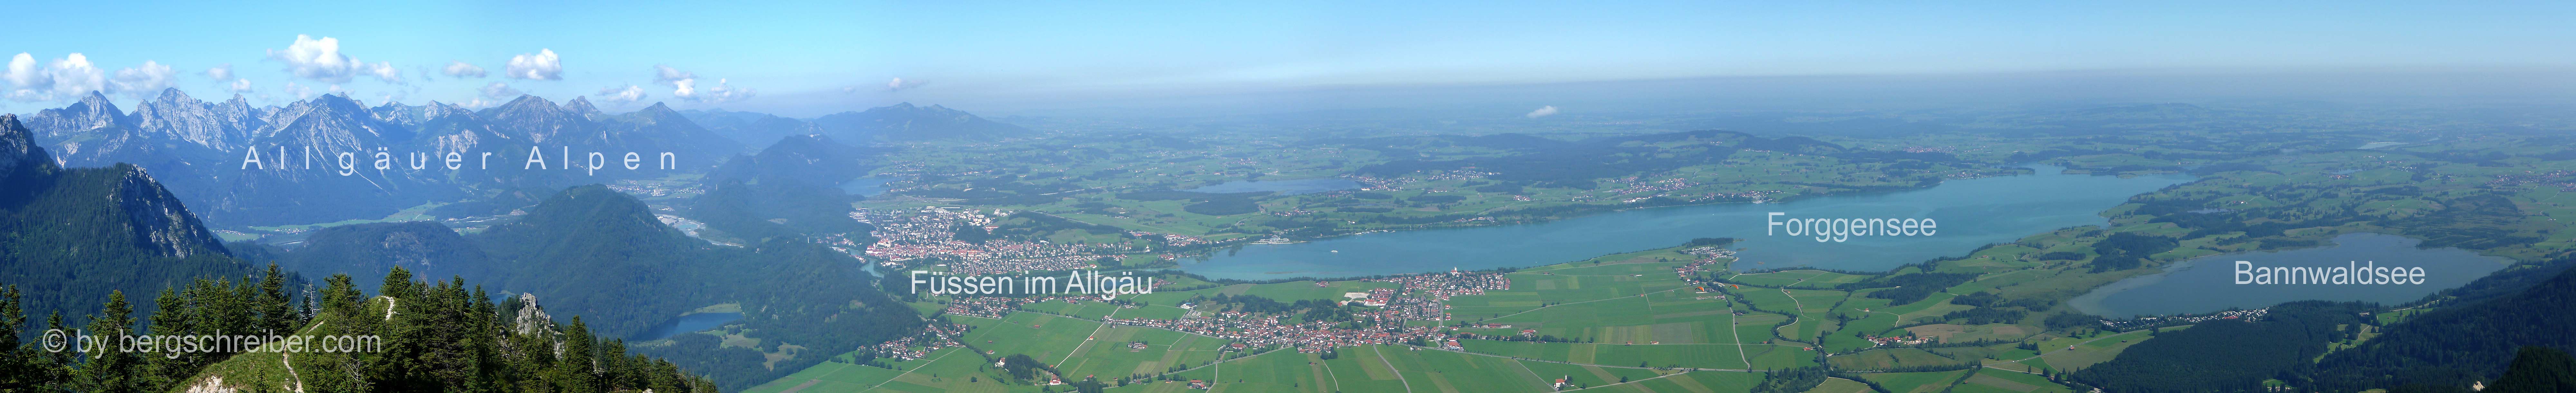 Panorama vom Tegelberg: Die Gipfelziele der Allgäuer Alpen, die Stadt Füssem im Allgäu und die vielen großen und kleinen Seen des Alpenvorlandes.